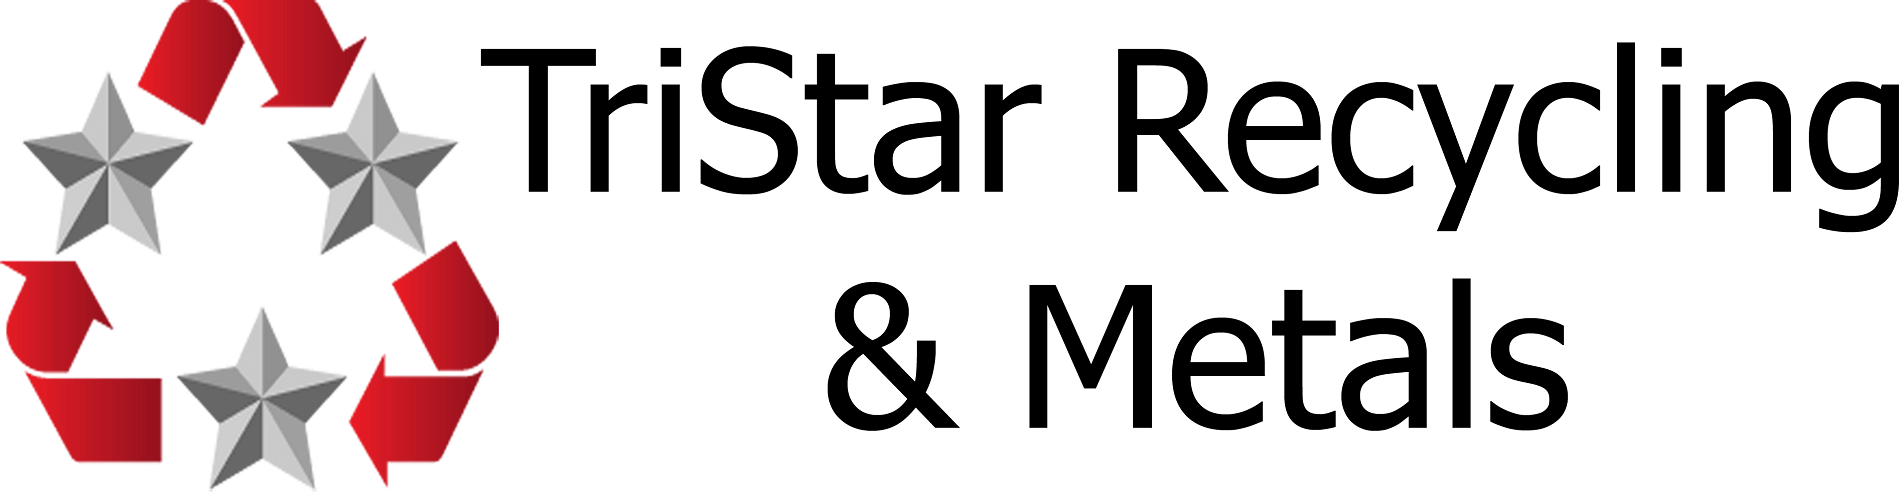 TriStar Recycling & Metals 